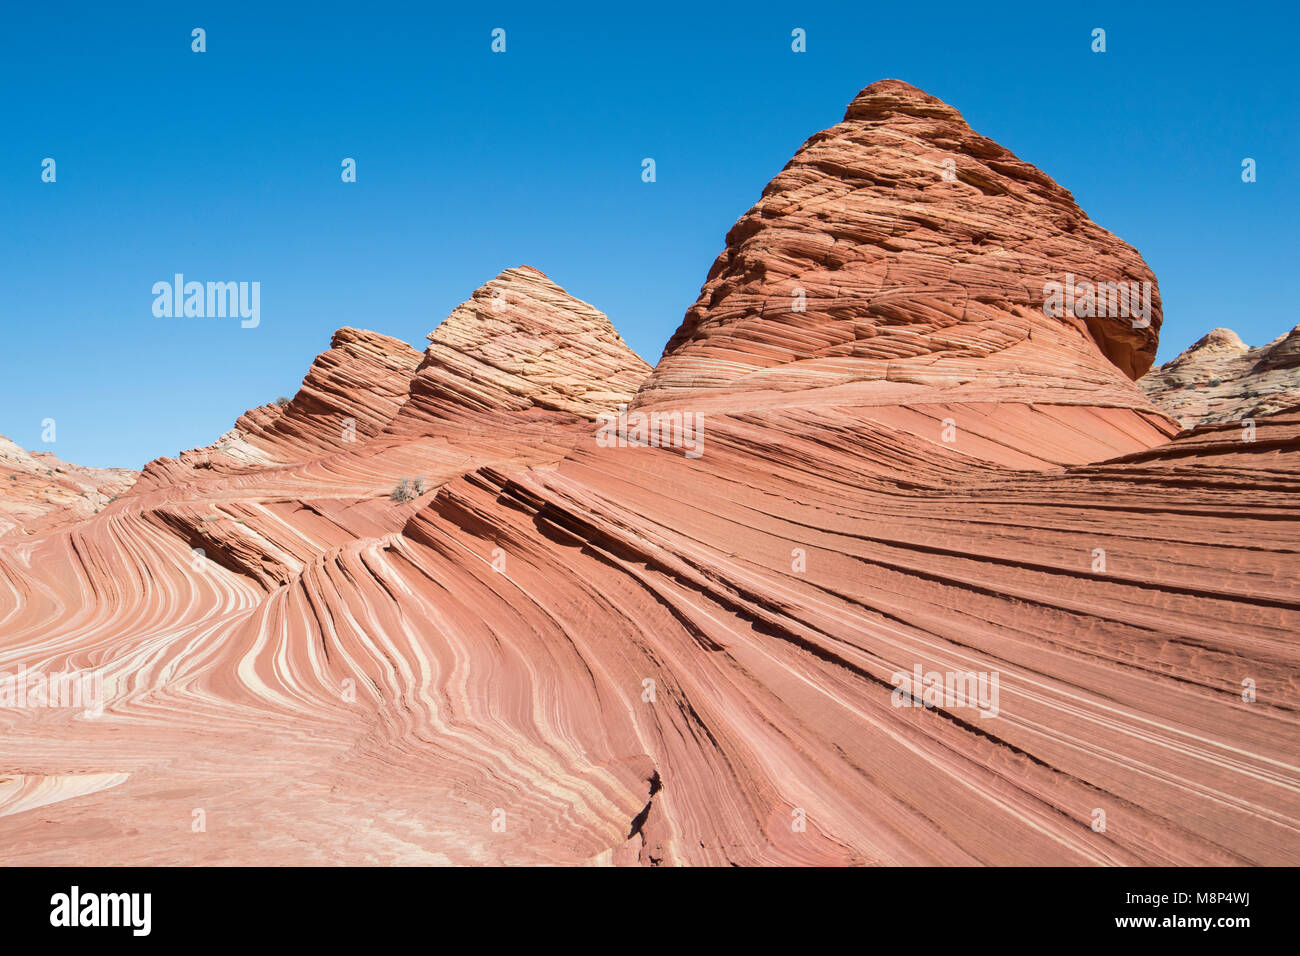 Pyramide Sandstein Felsformationen Coyote Buttes North, Teil der Paria Canyon-Vermilion Cliffs Wilderness Area. Stockfoto